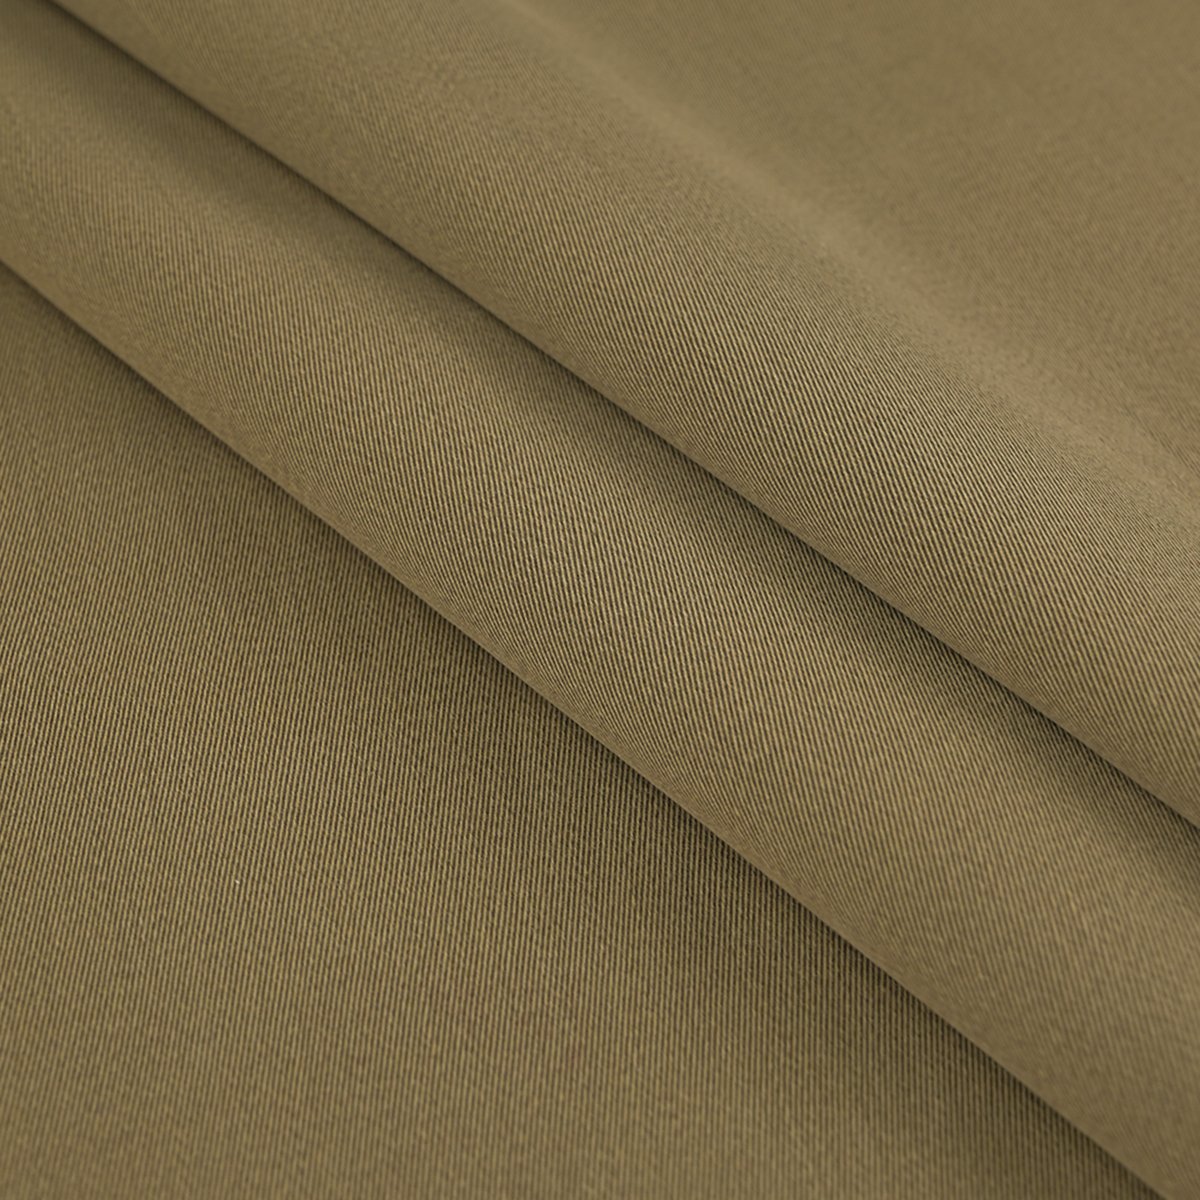 Khaki Heavy Twill Fabric 96599